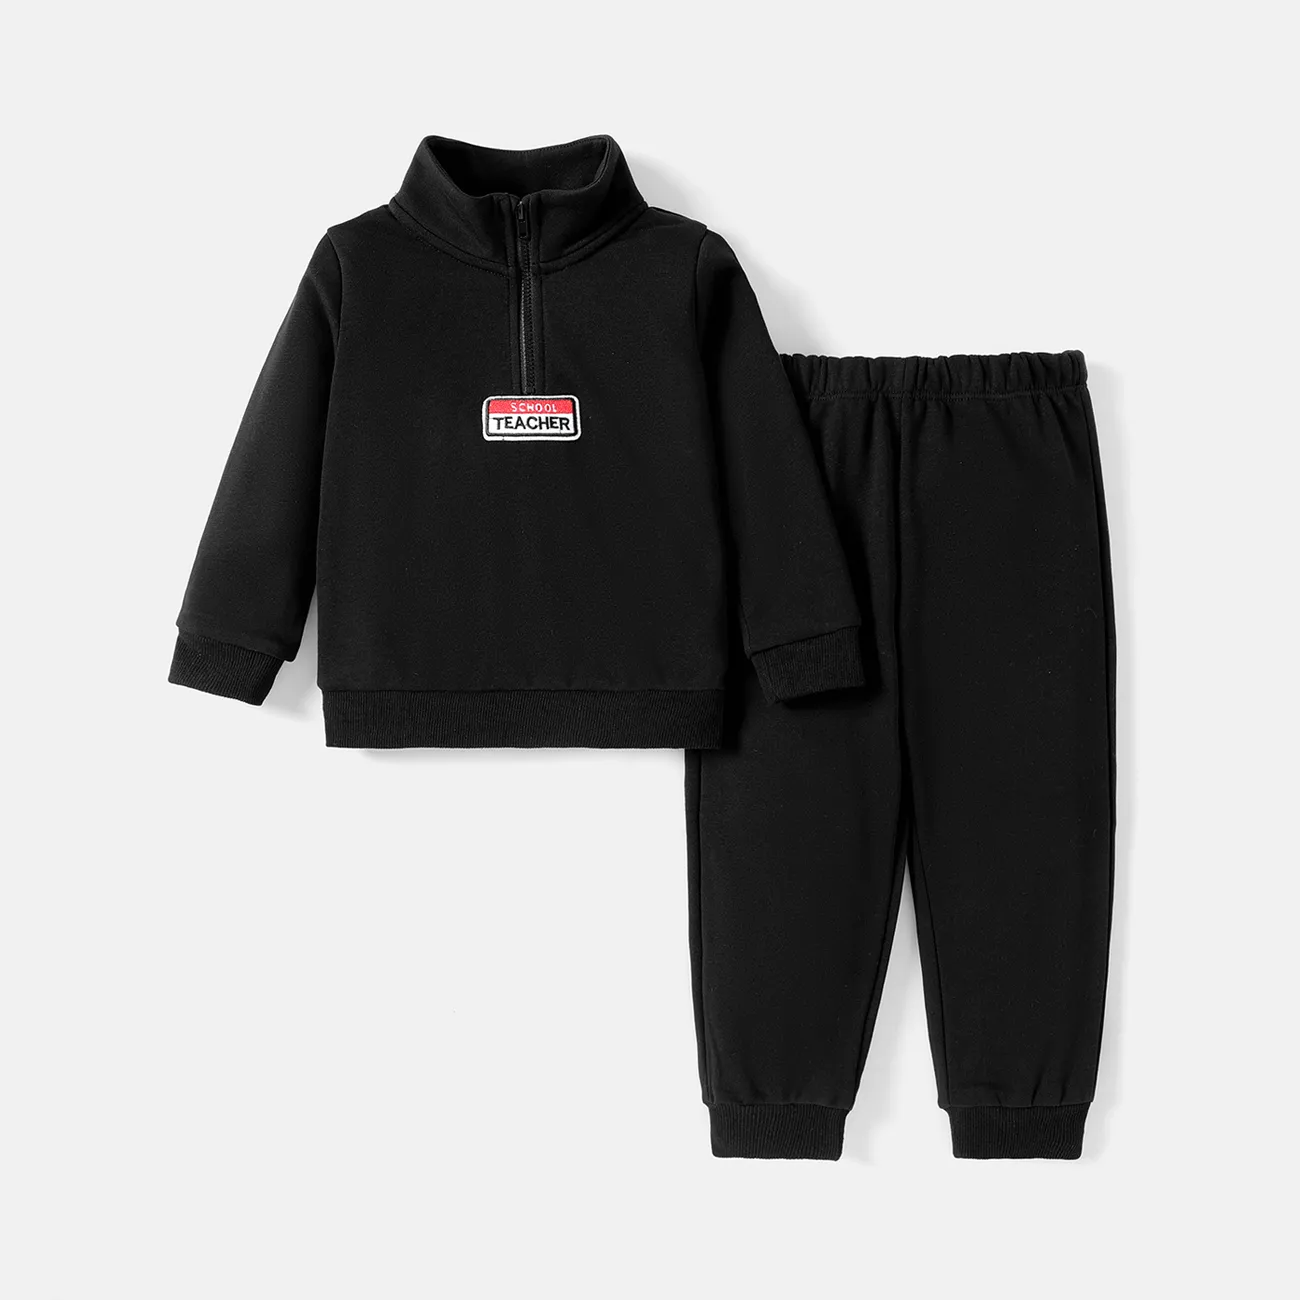 2pcs Toddler Boy Zipper Design Letter Embroidered Sweatshirt and Pants Set Black big image 1